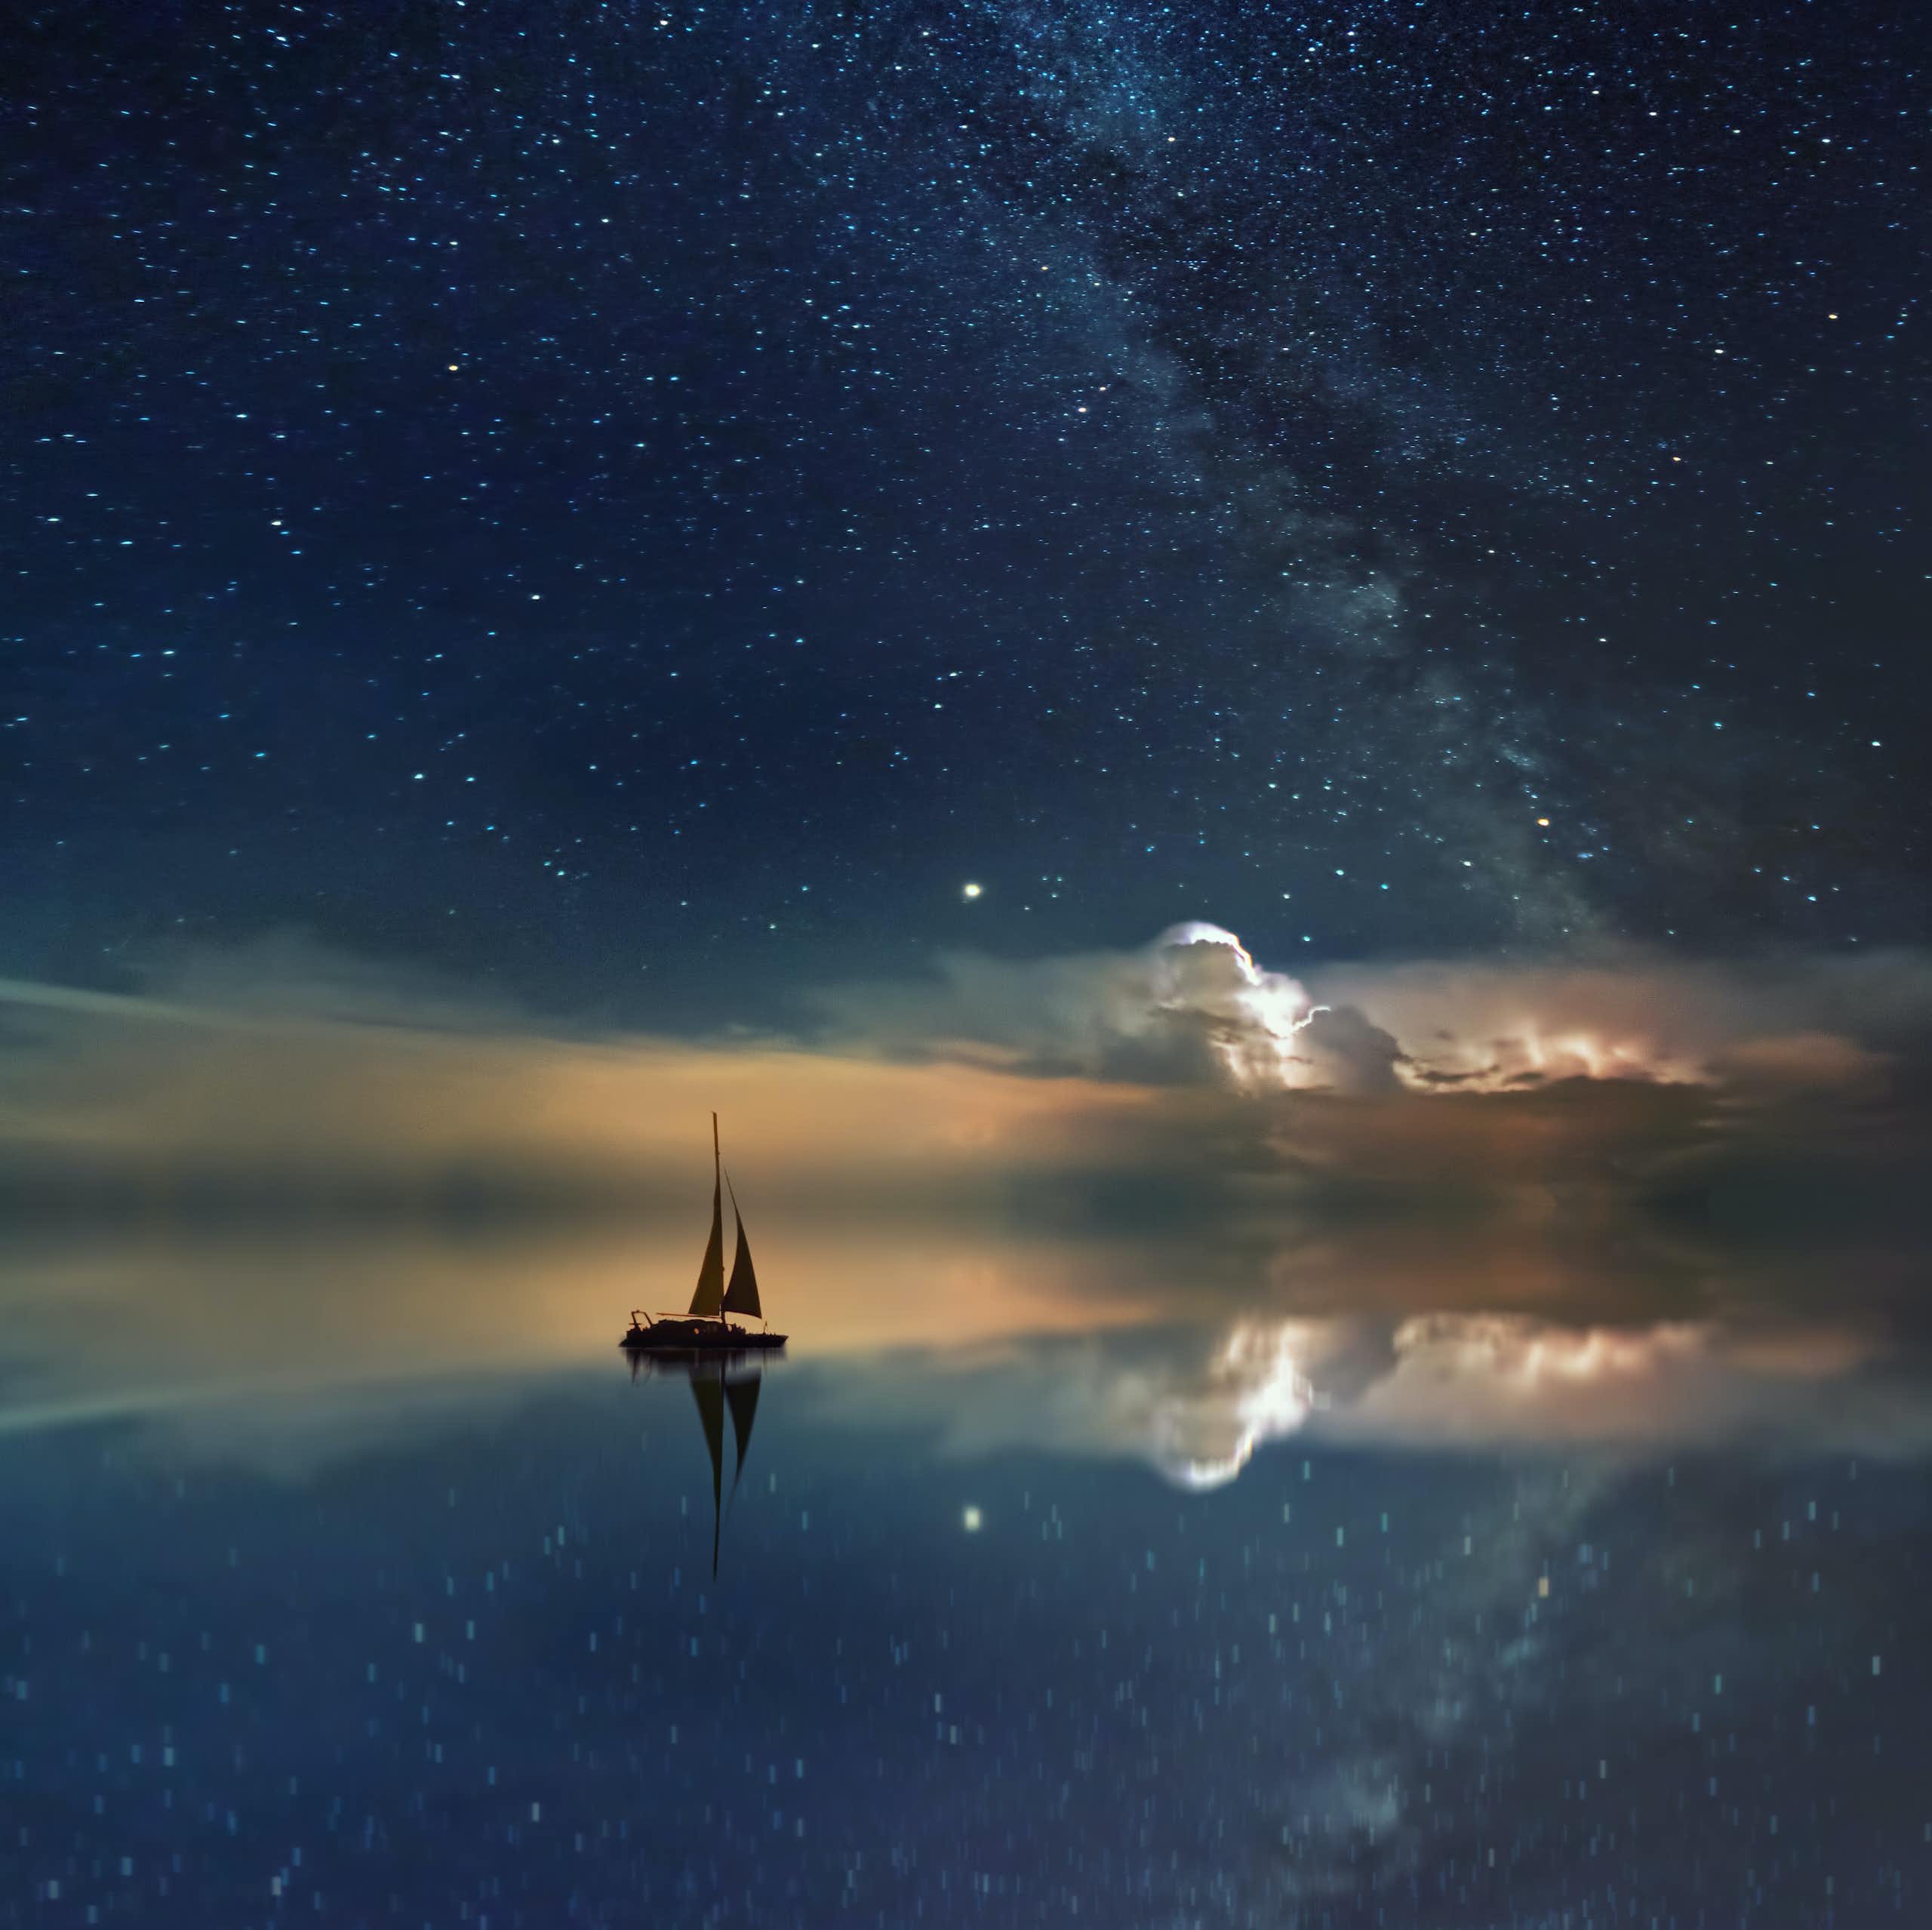 Un bateau glissant sur une mer d’huile dans laquelle se reflète le ciel étoilé